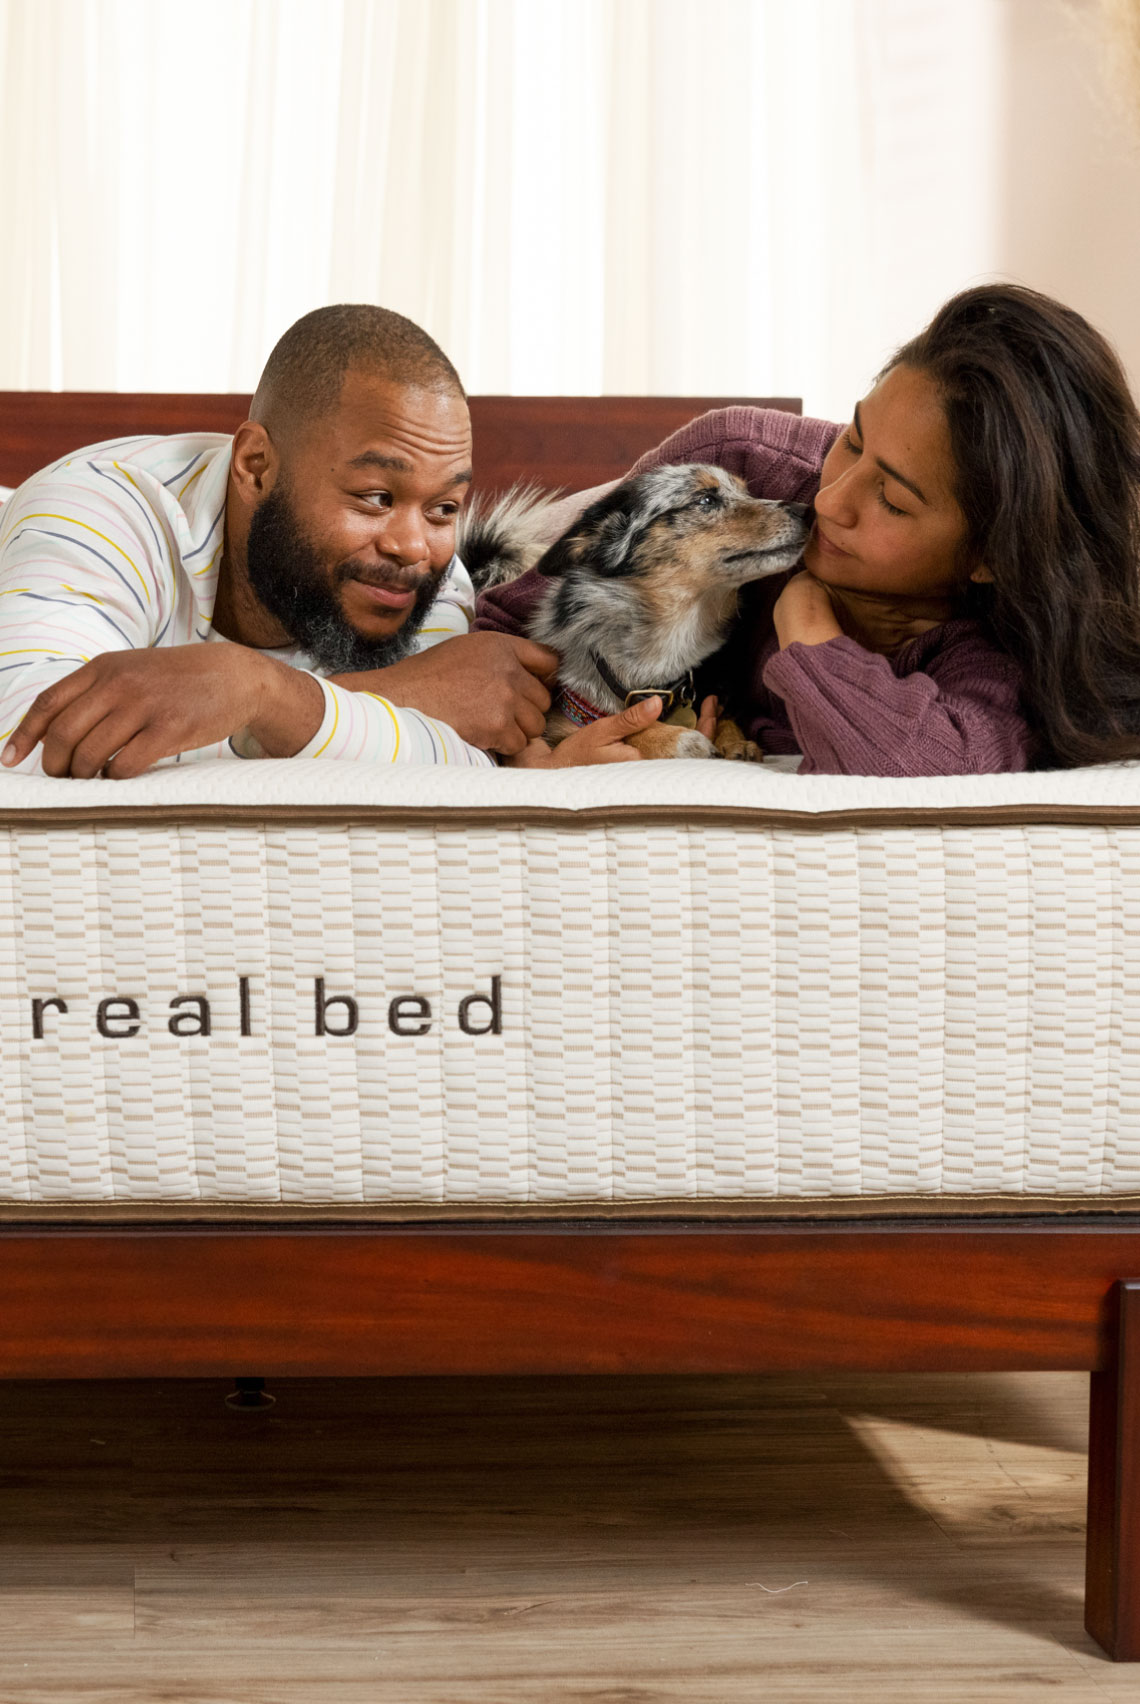 Real Bed mattress